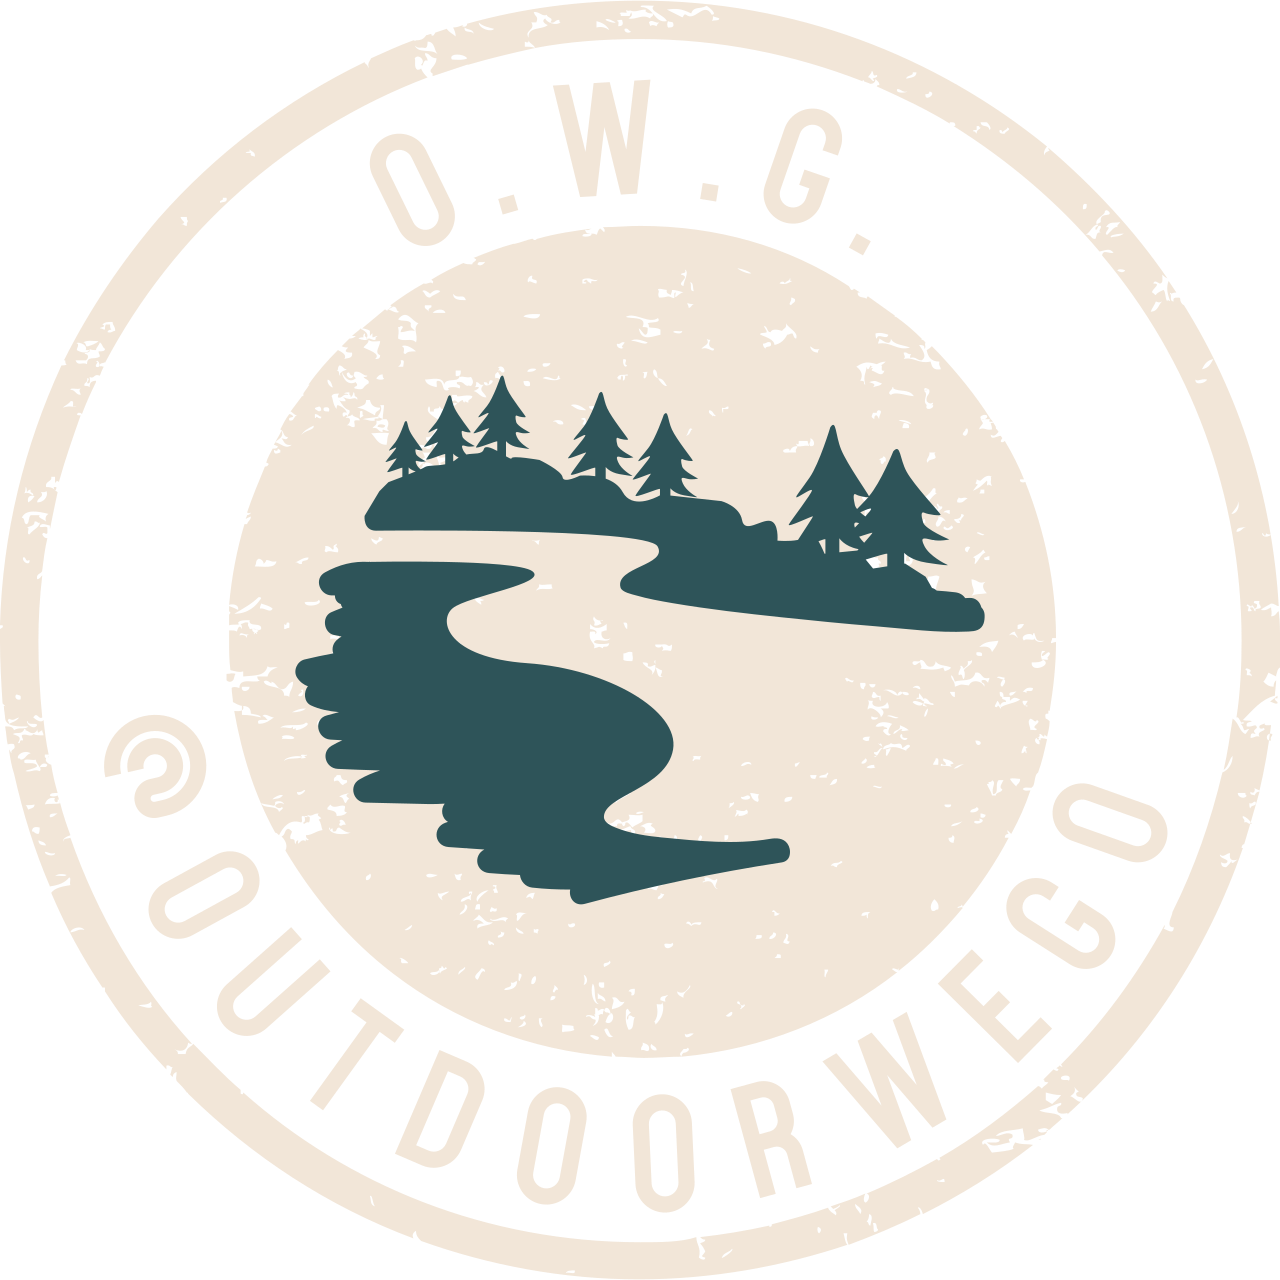 O.W.G.'s web page